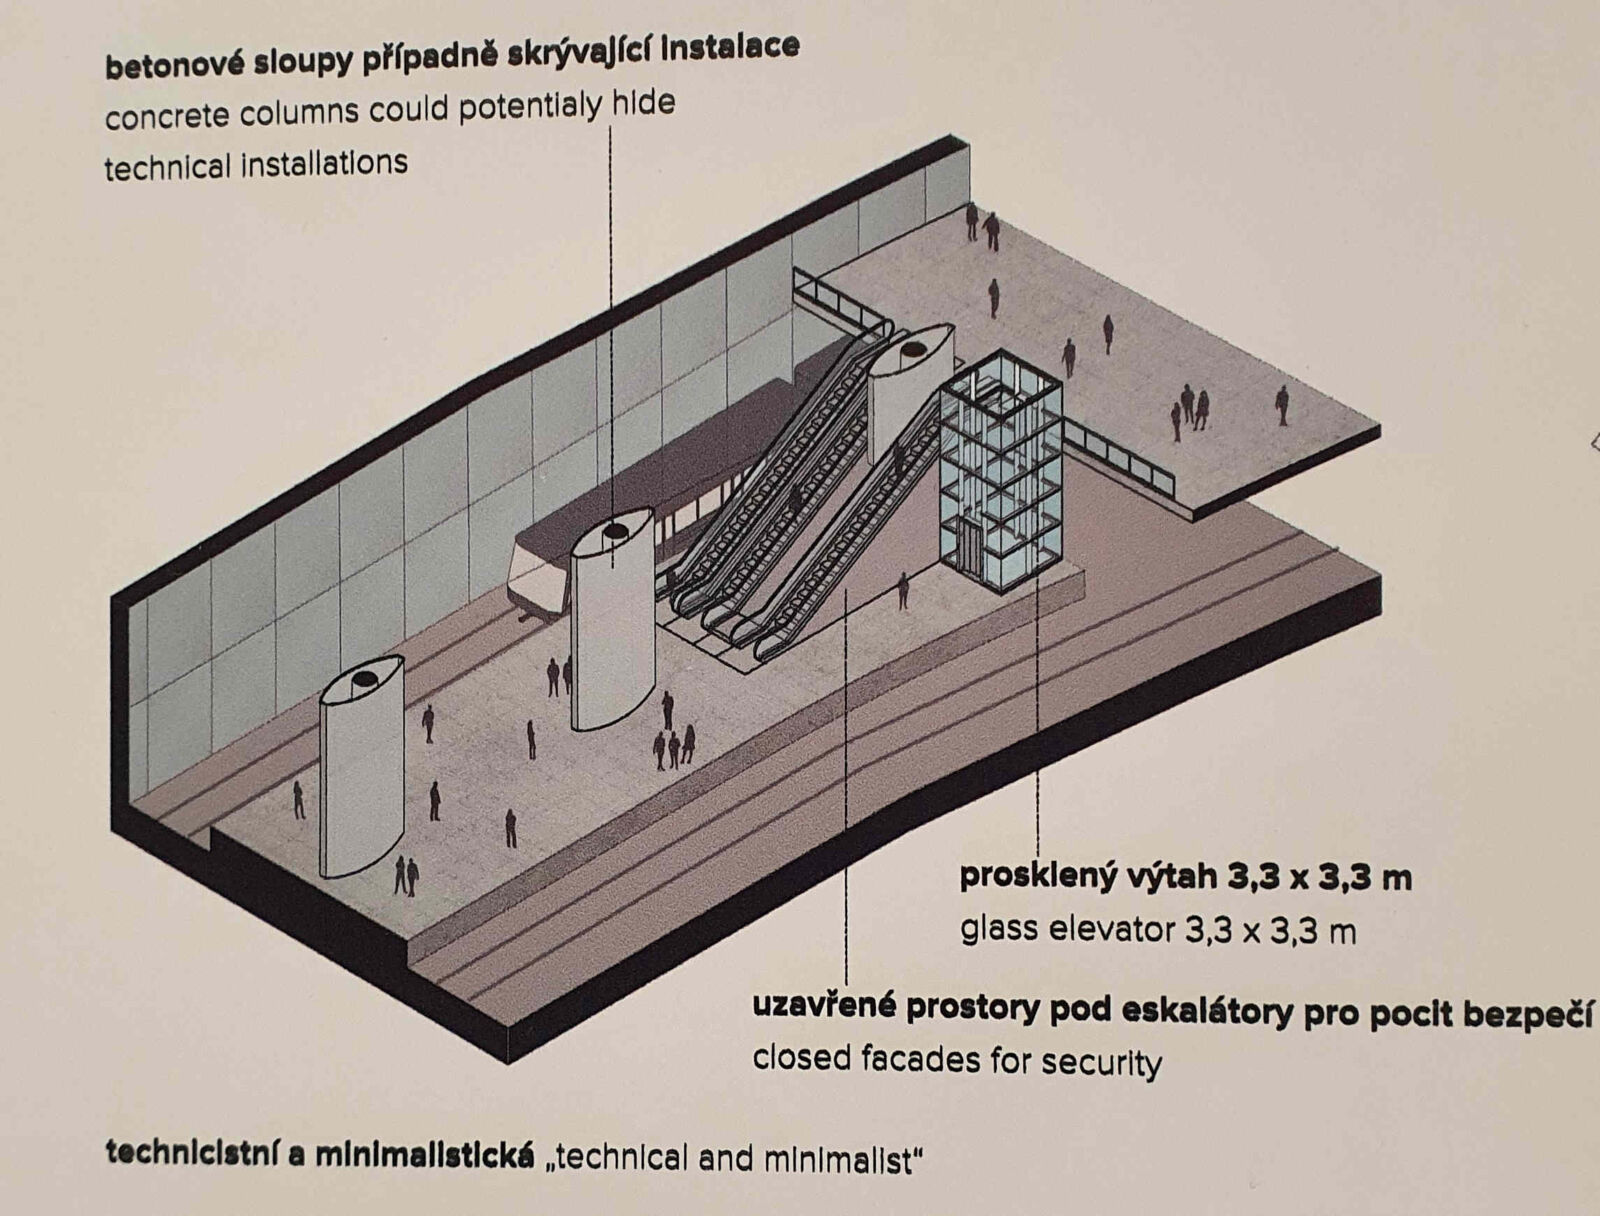 Nákres stanice brněnské podzemky pod novým nádražím